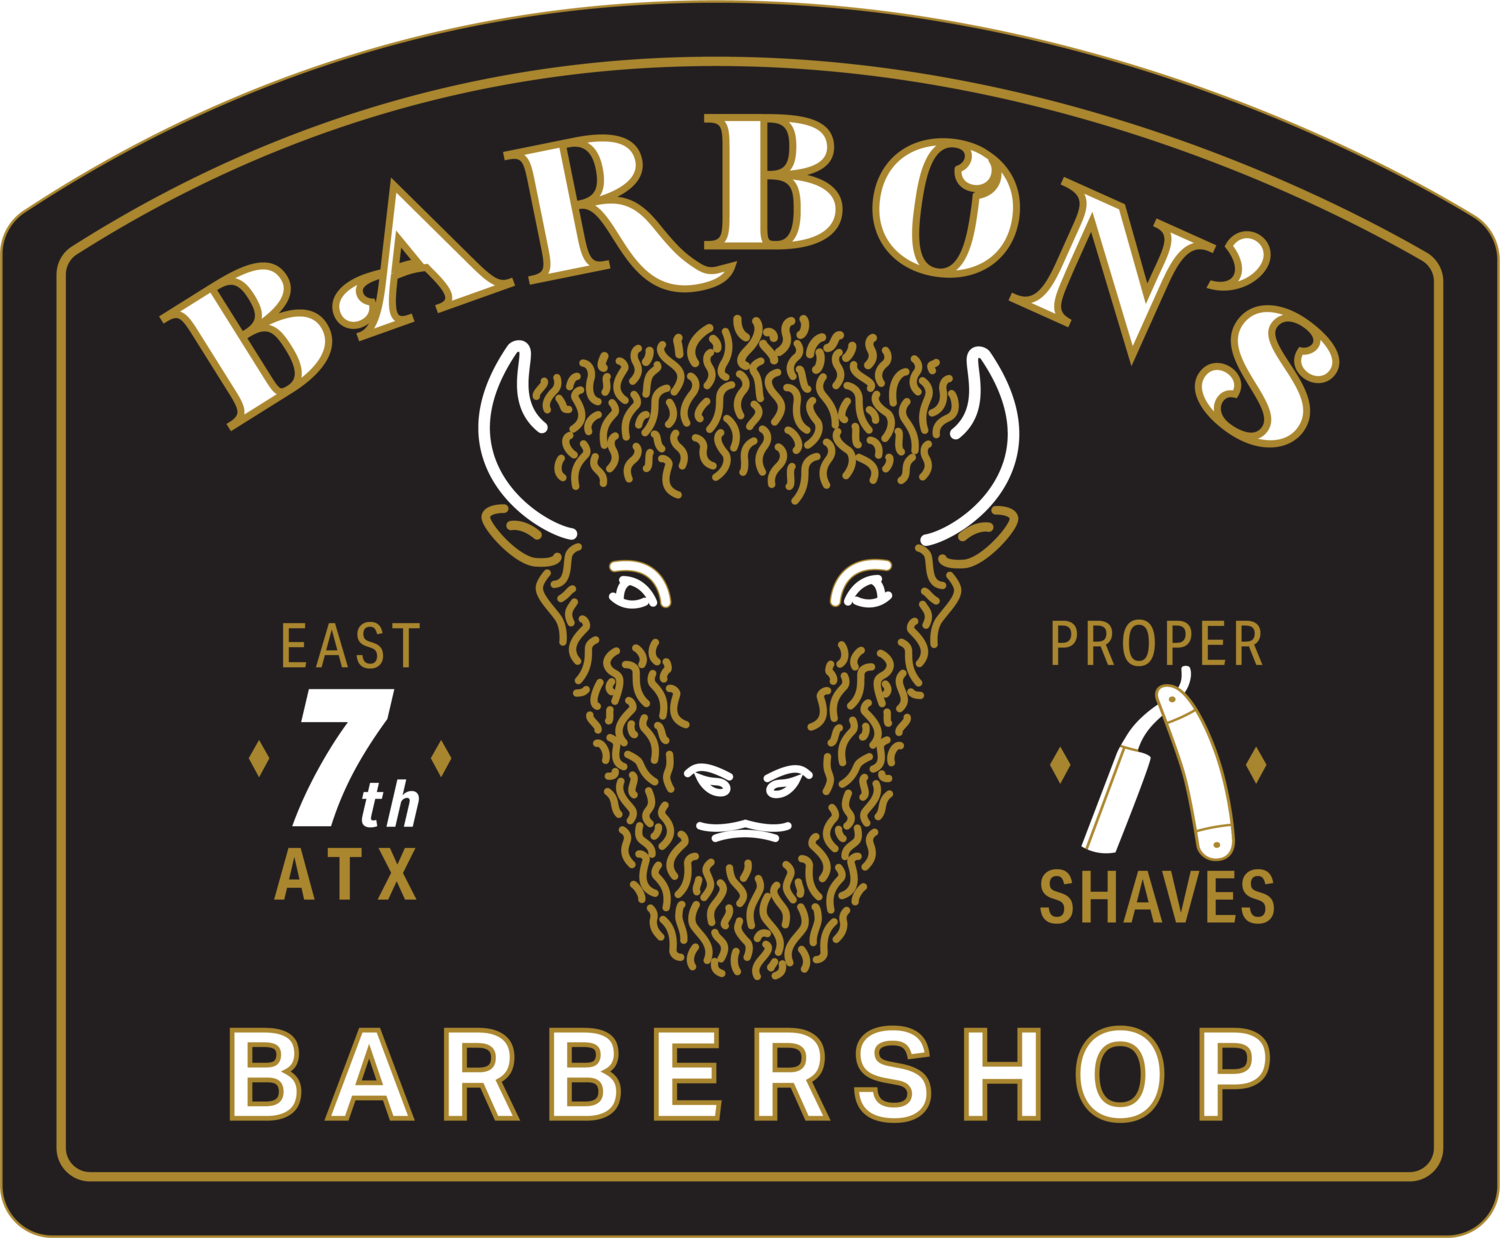 Barbons Barbershop